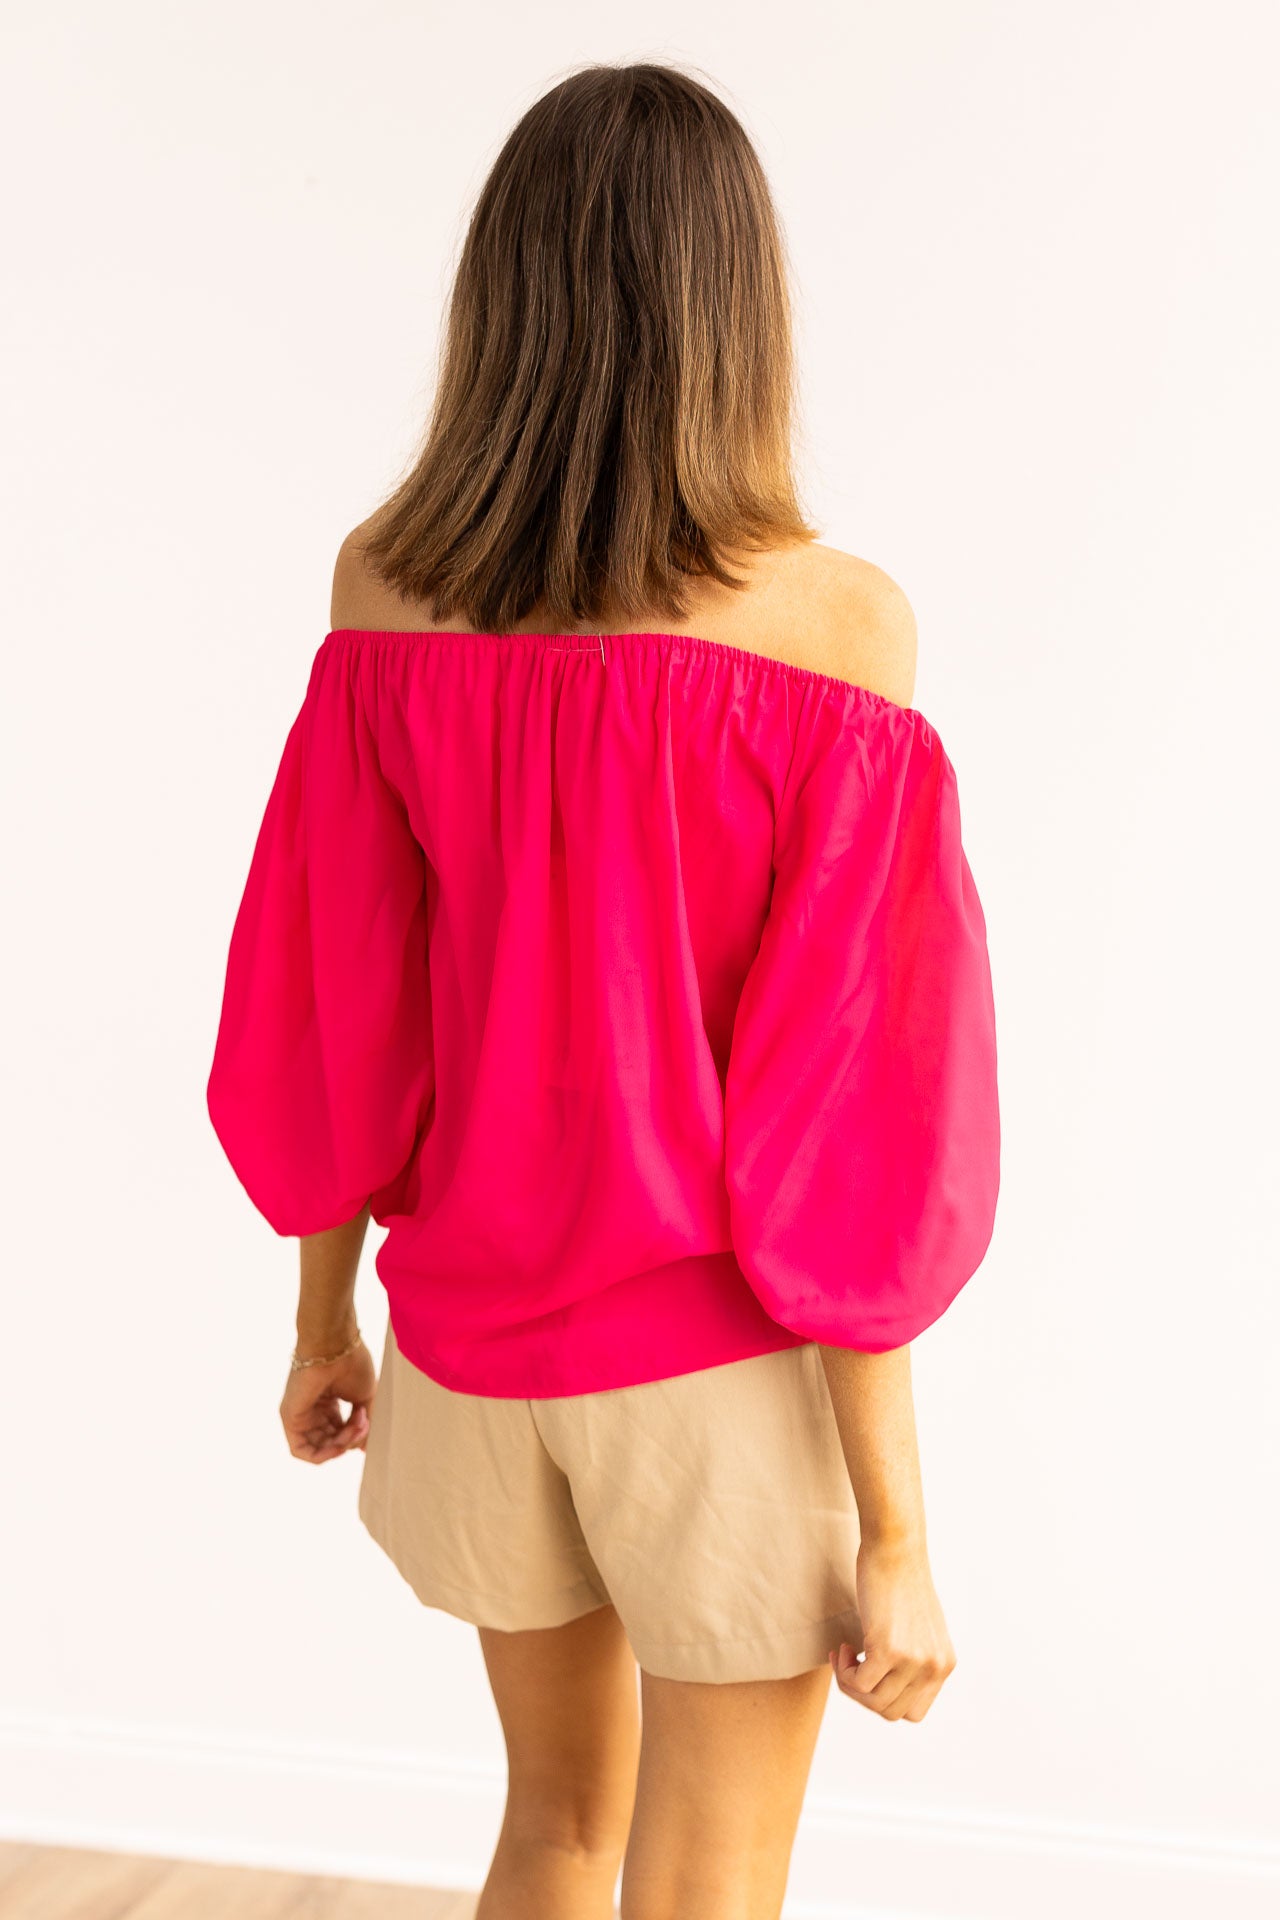 The Azalea Pink Off-Shoulder Top